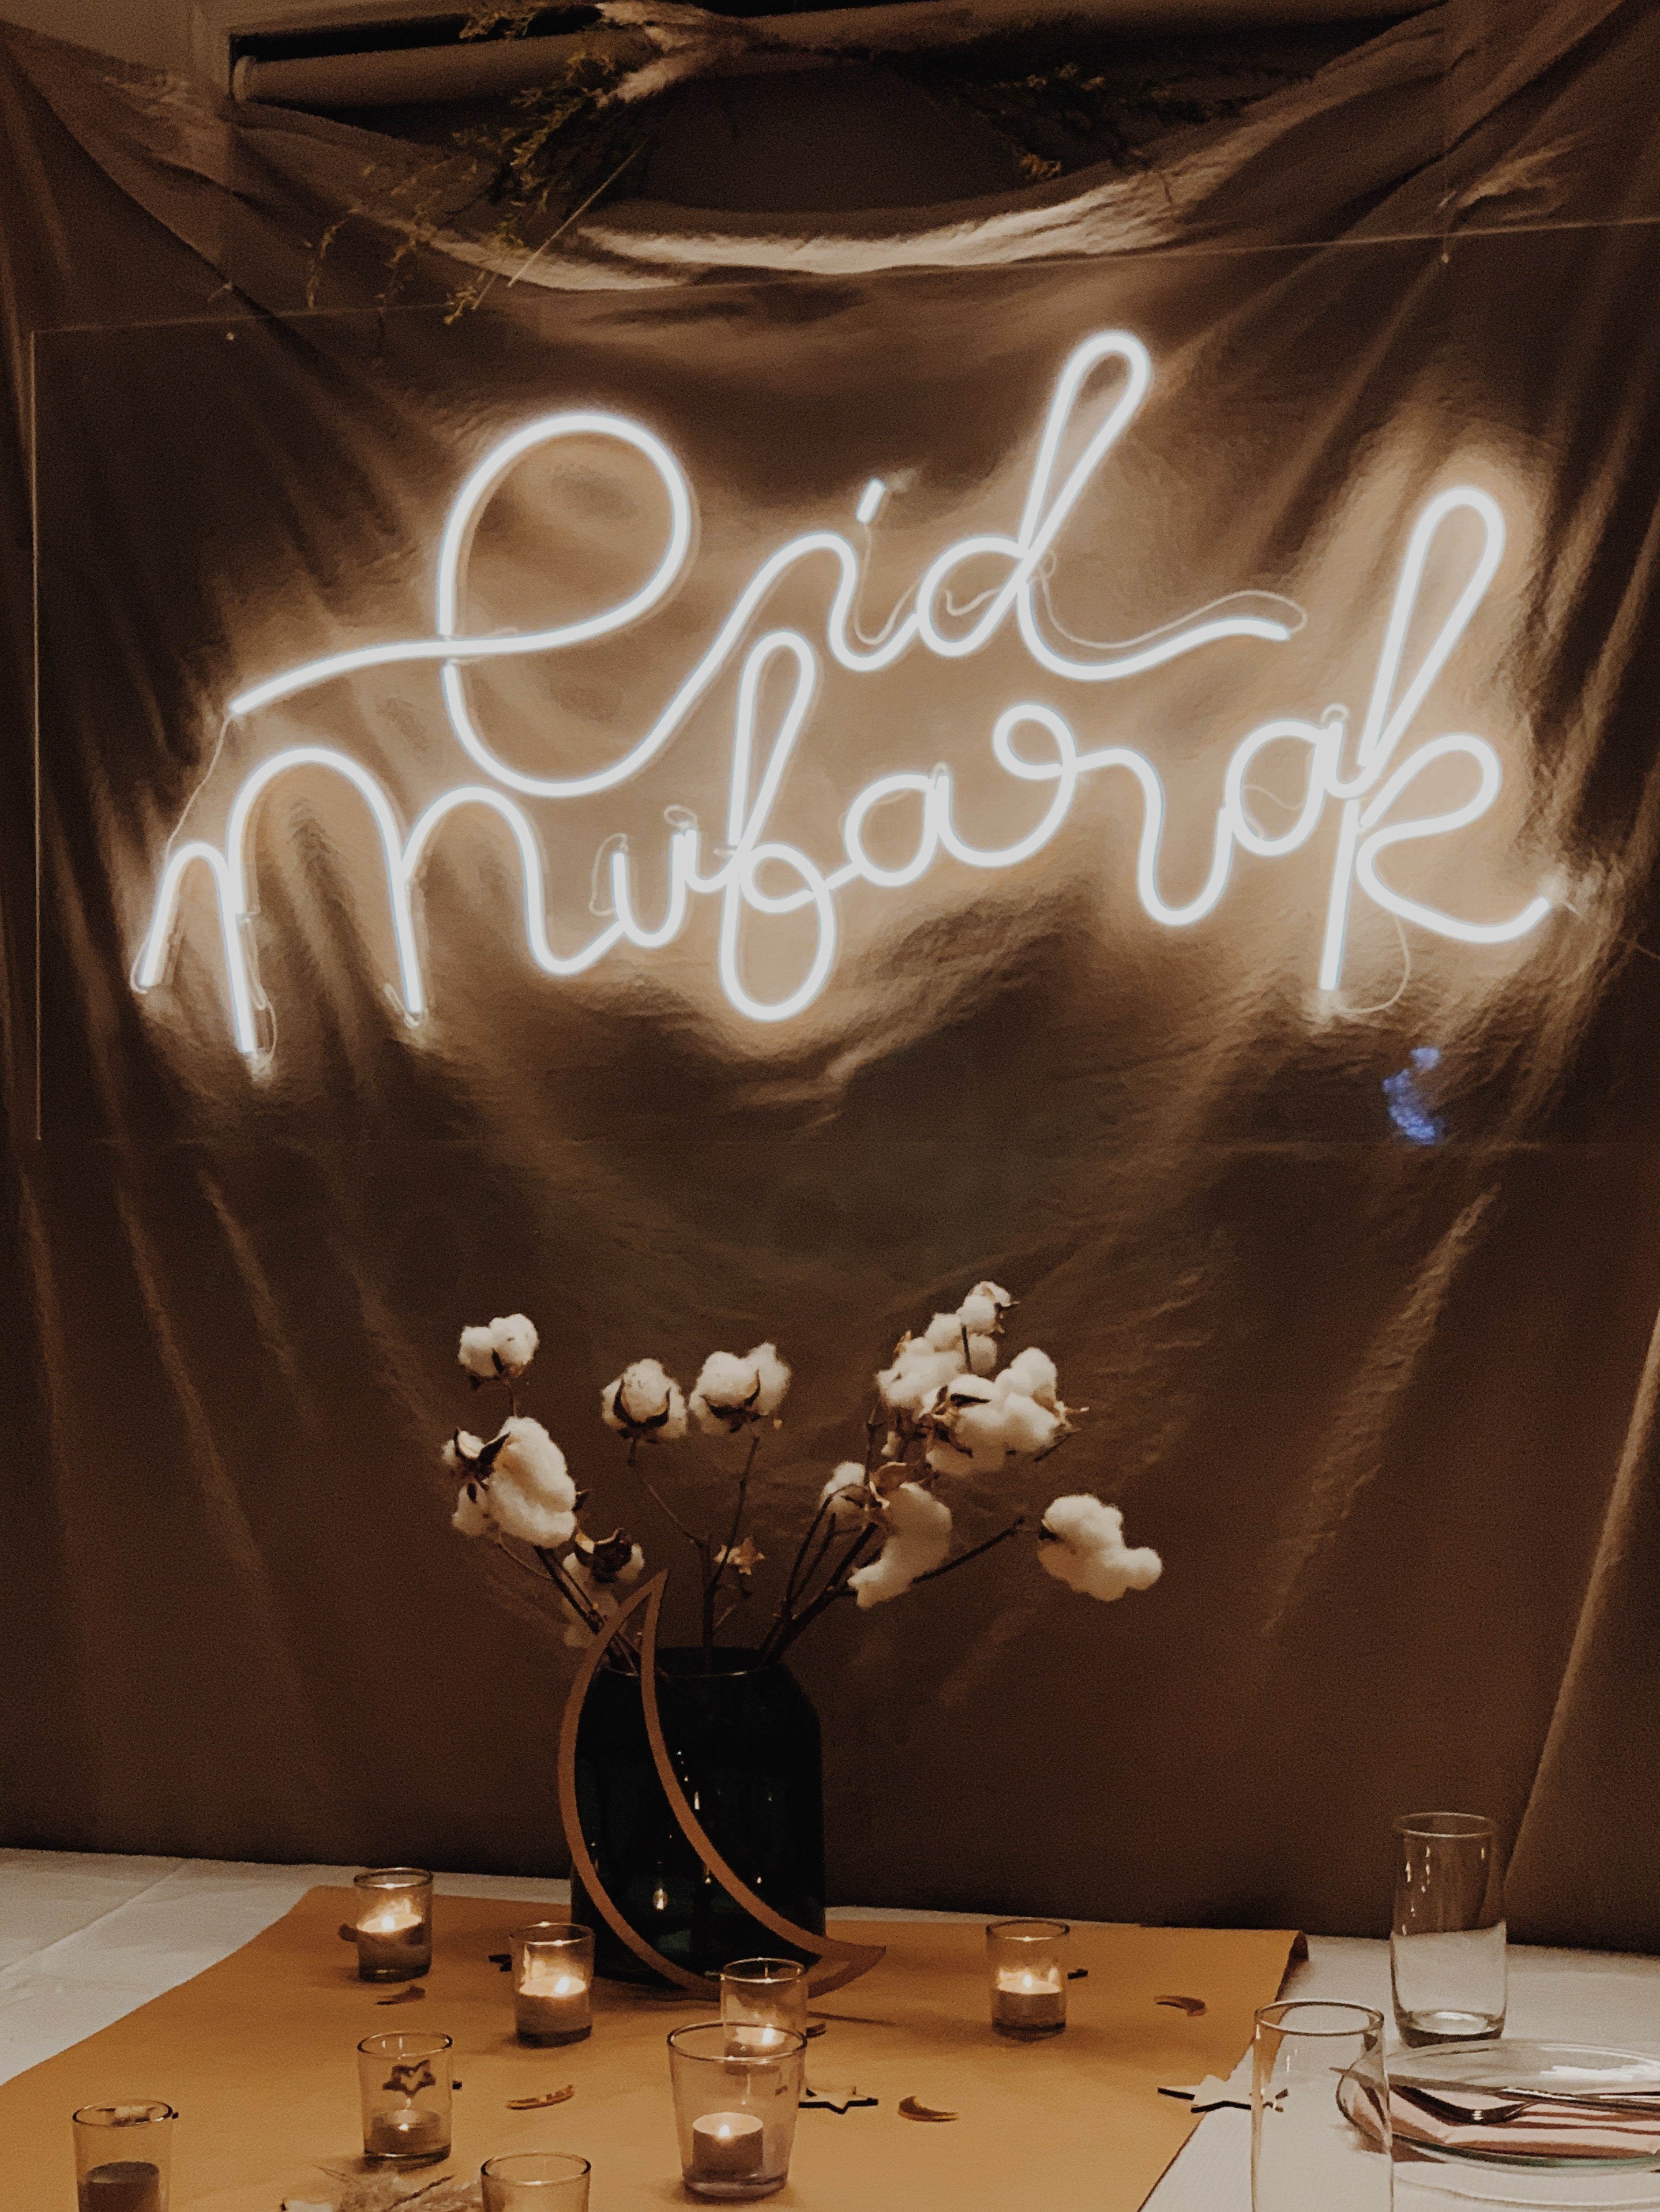 The Neon Eid Mubarak Sign